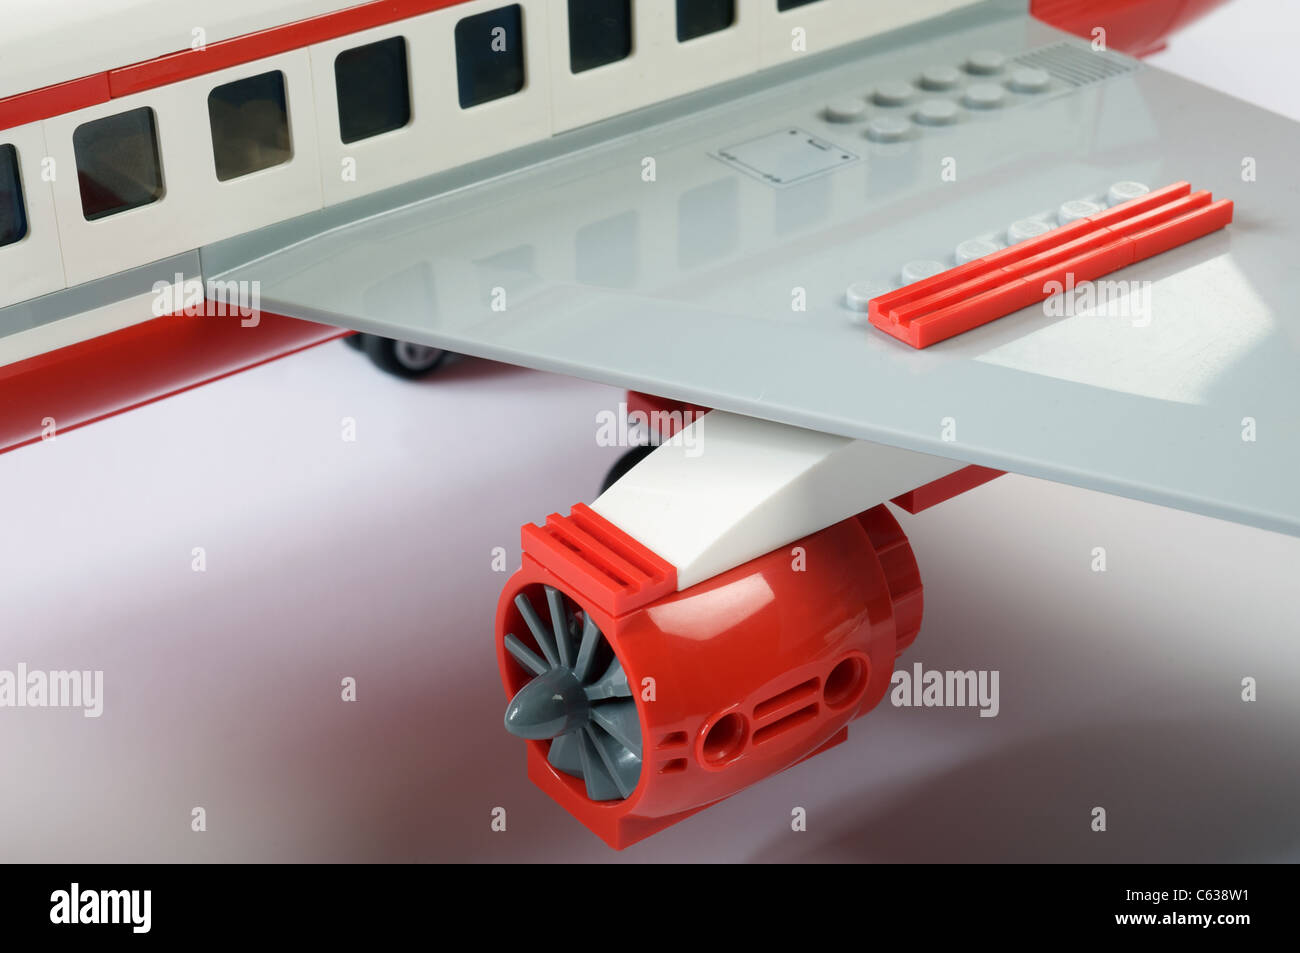 Modèle Lego avion de passagers Photo Stock - Alamy